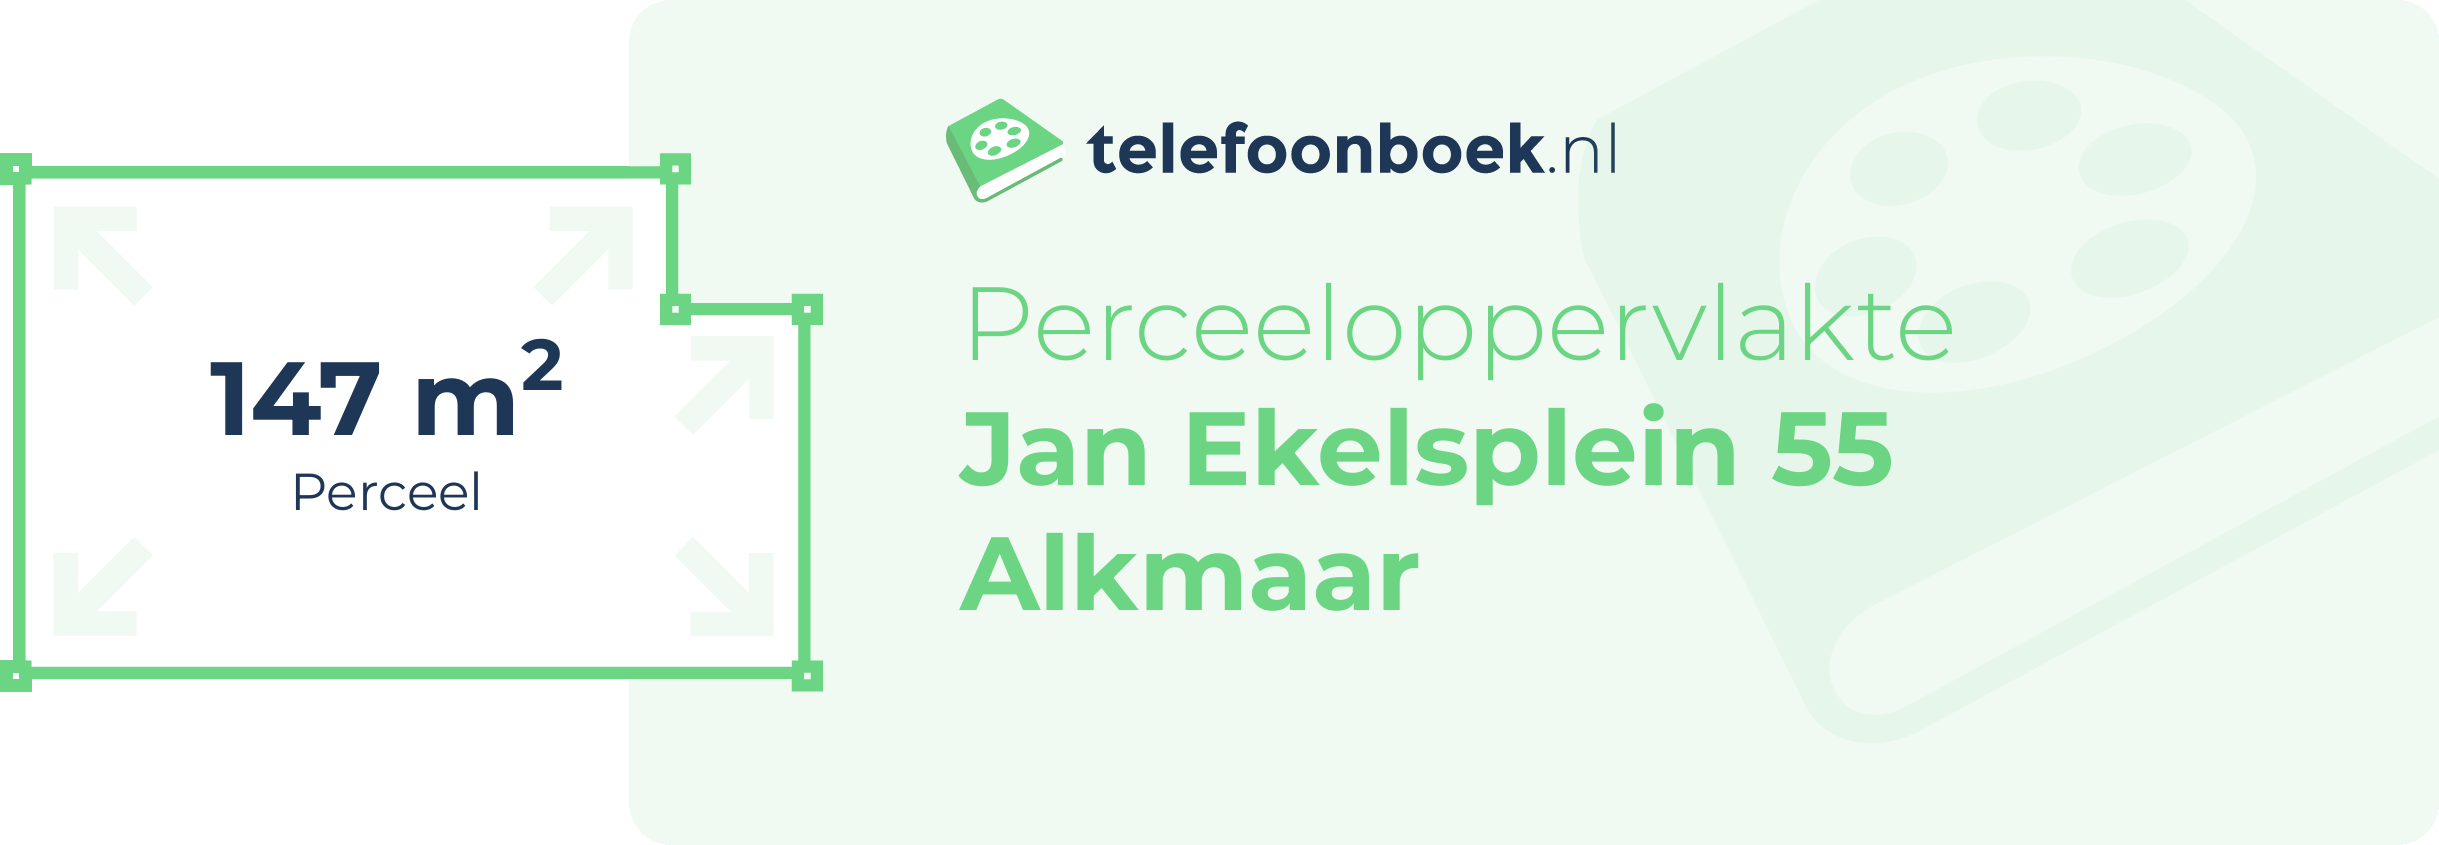 Perceeloppervlakte Jan Ekelsplein 55 Alkmaar